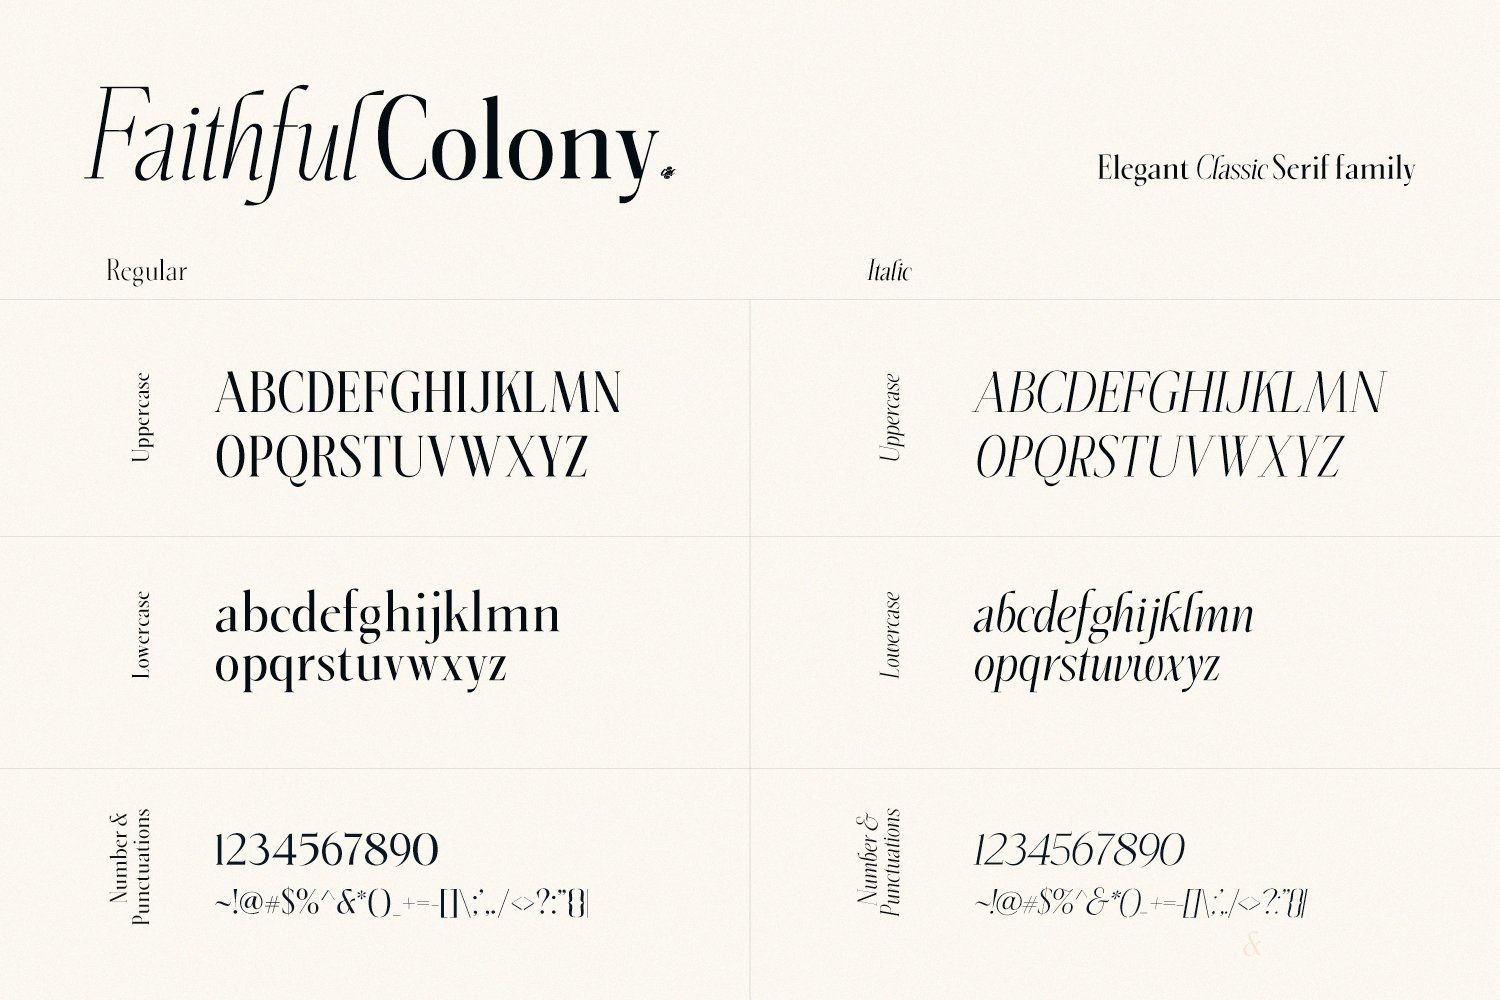 4 faithful colony elegan serif family 648